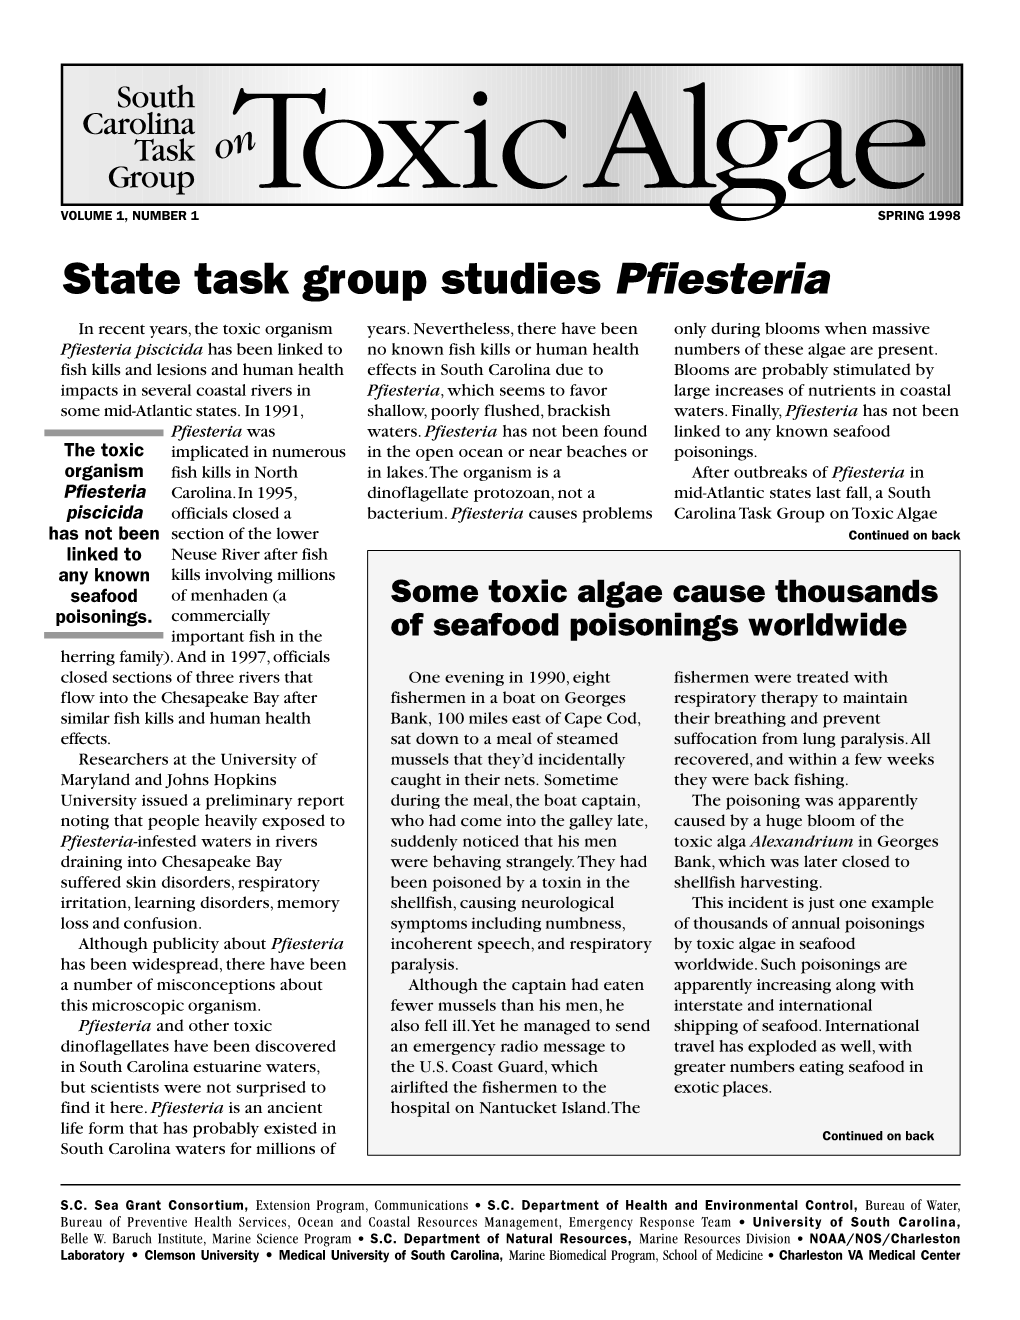 SPRING 1998 State Task Group Studies Pfiesteria